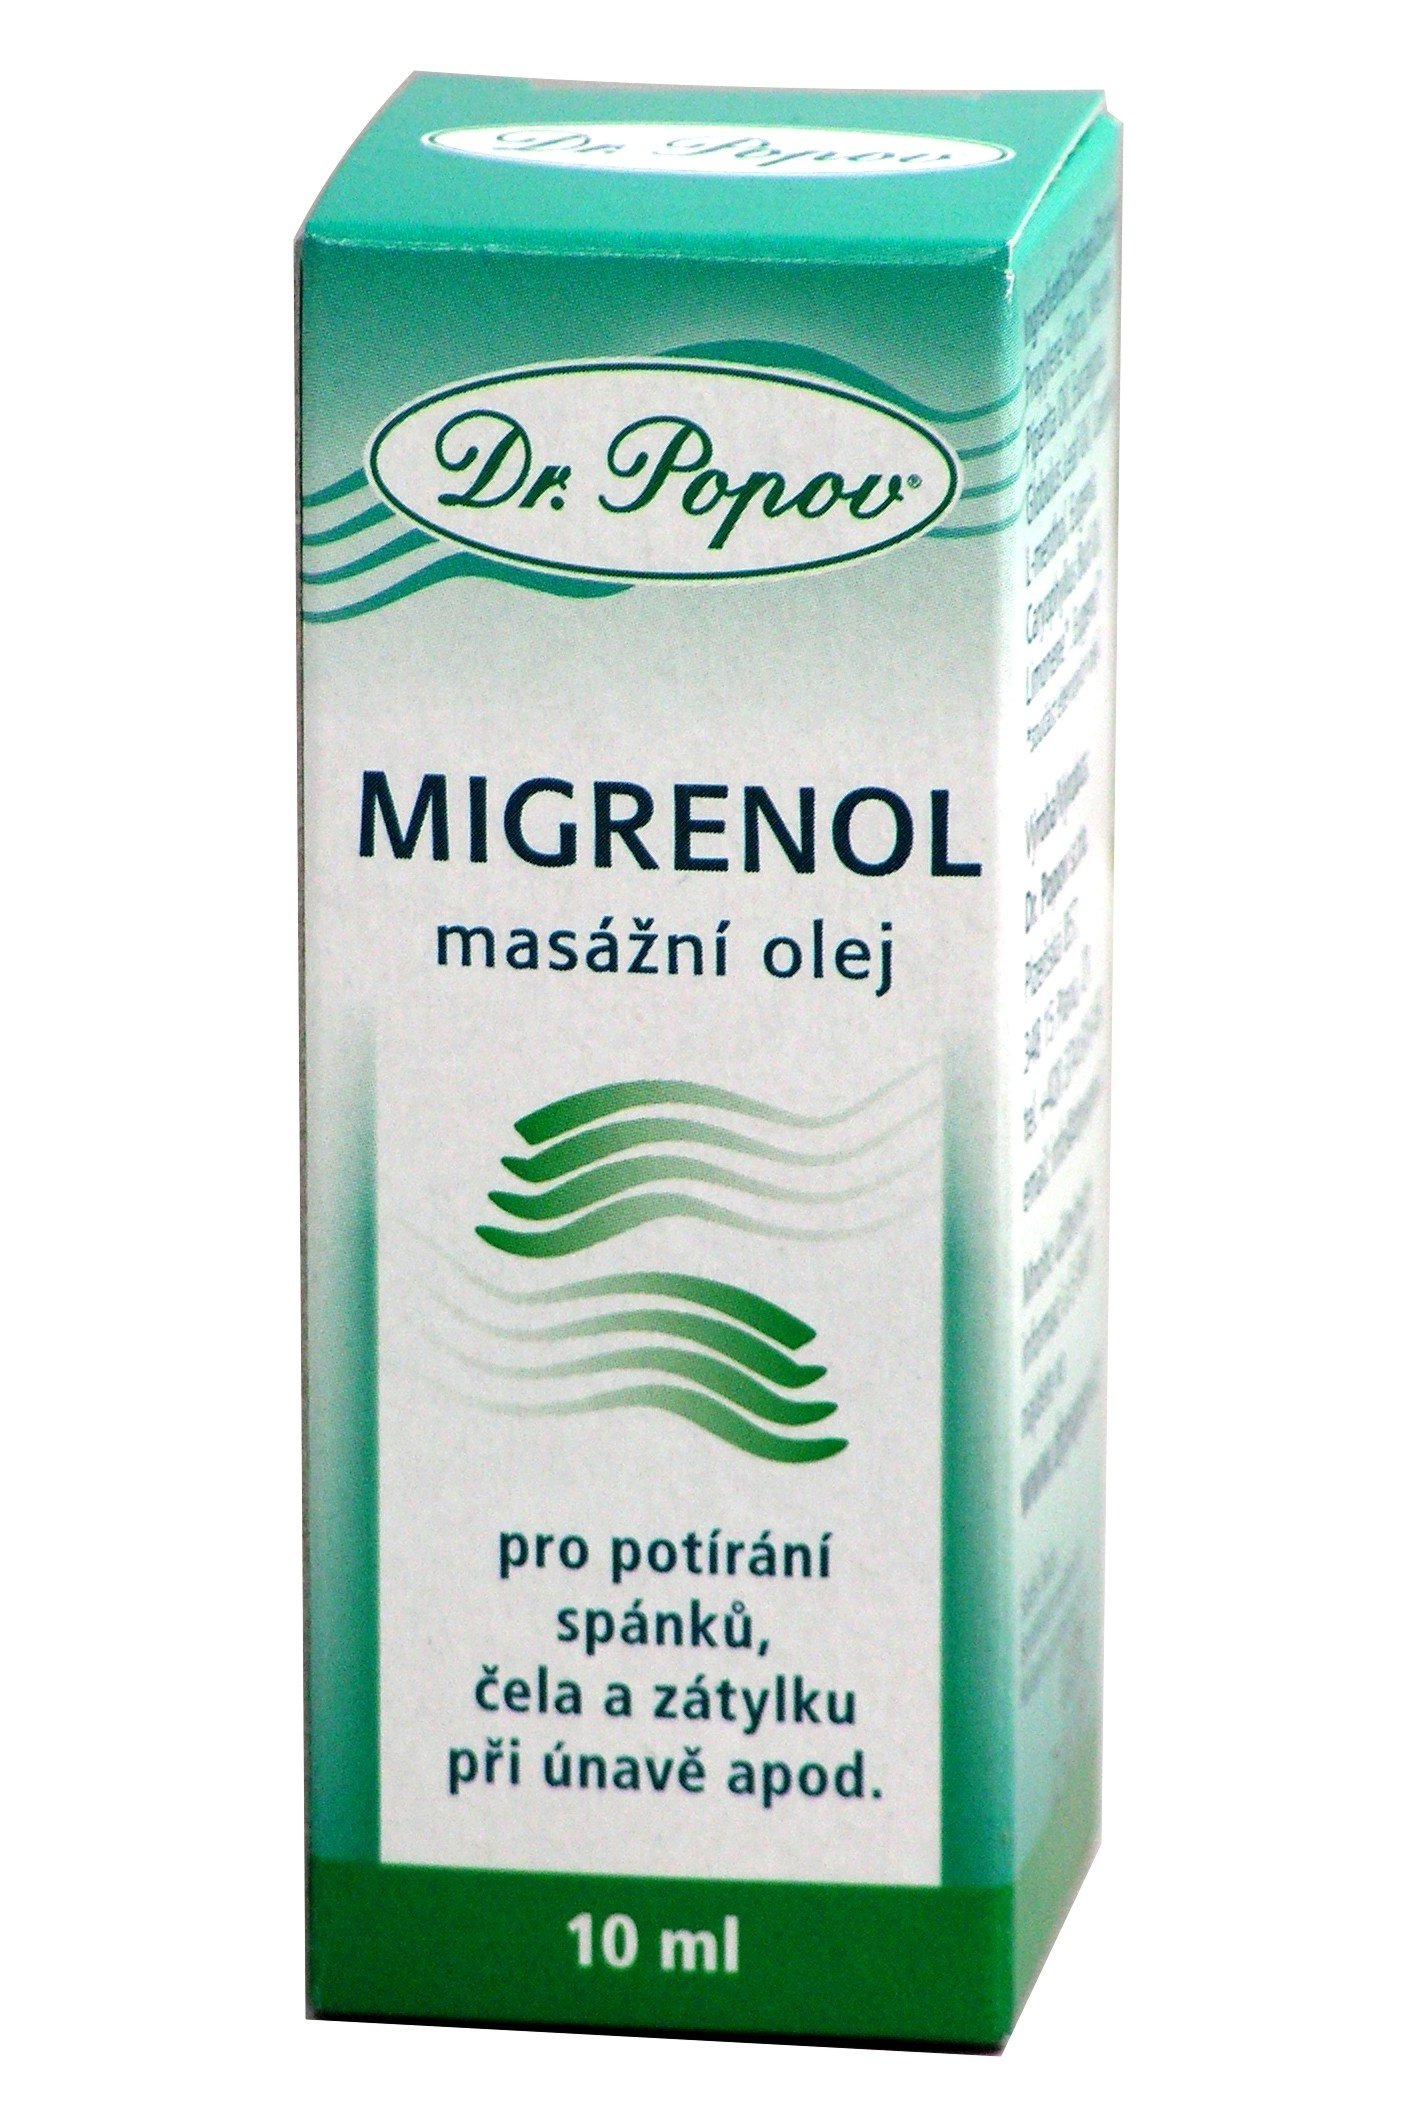 Migrenol masážní olej 10 ml Dr.Popov